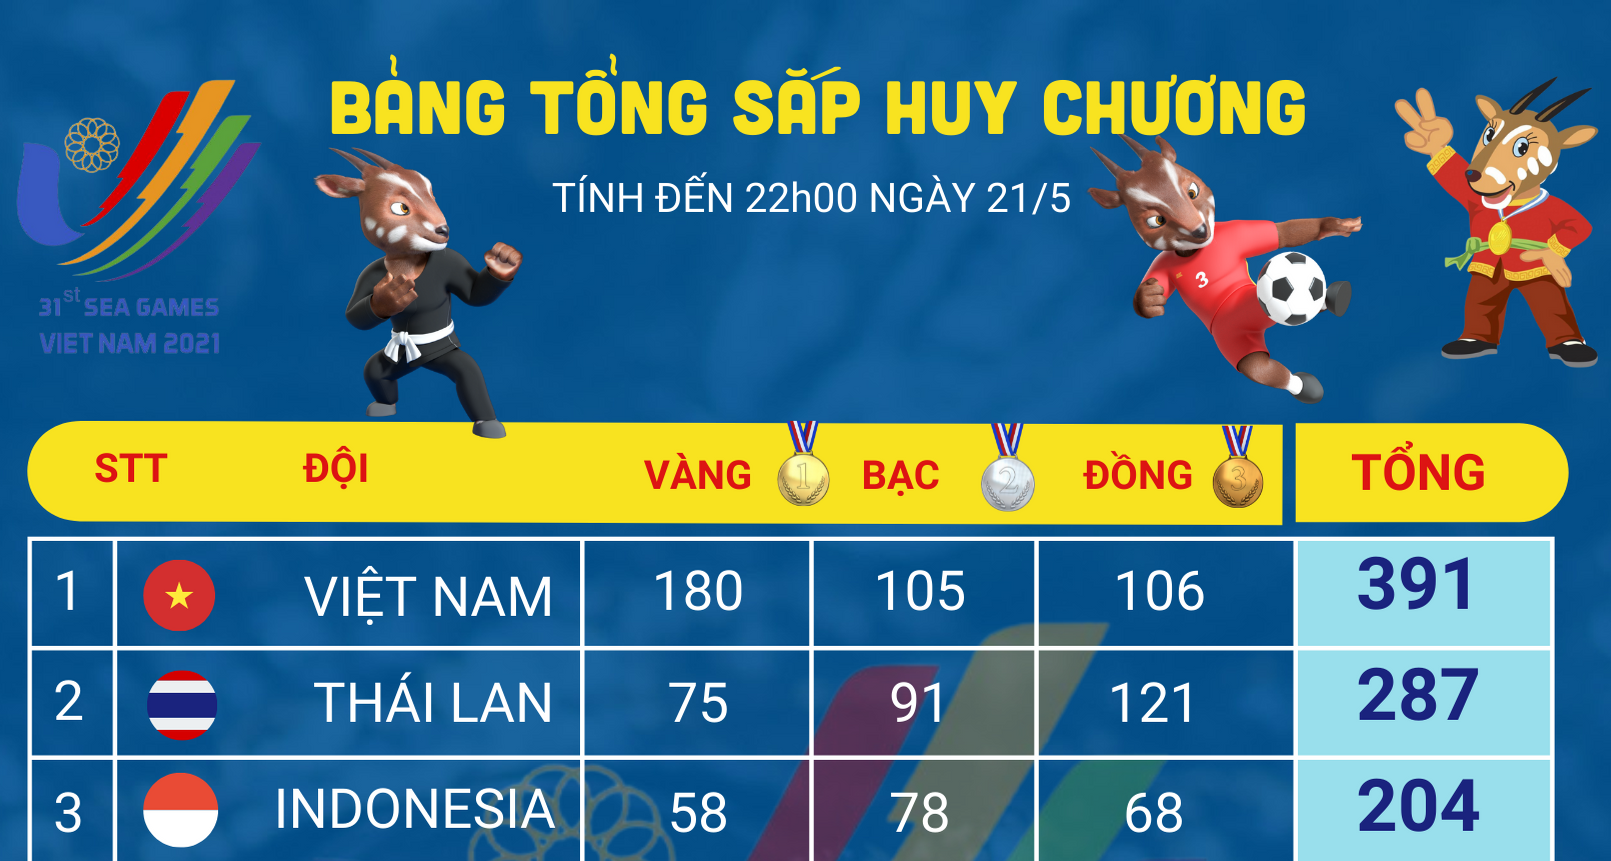 [Infographics] Bảng tổng sắp huy chương SEA Games 31 ngày 21/5: Chúc mừng đội tuyển bóng đá nữ Việt Nam giành HCV